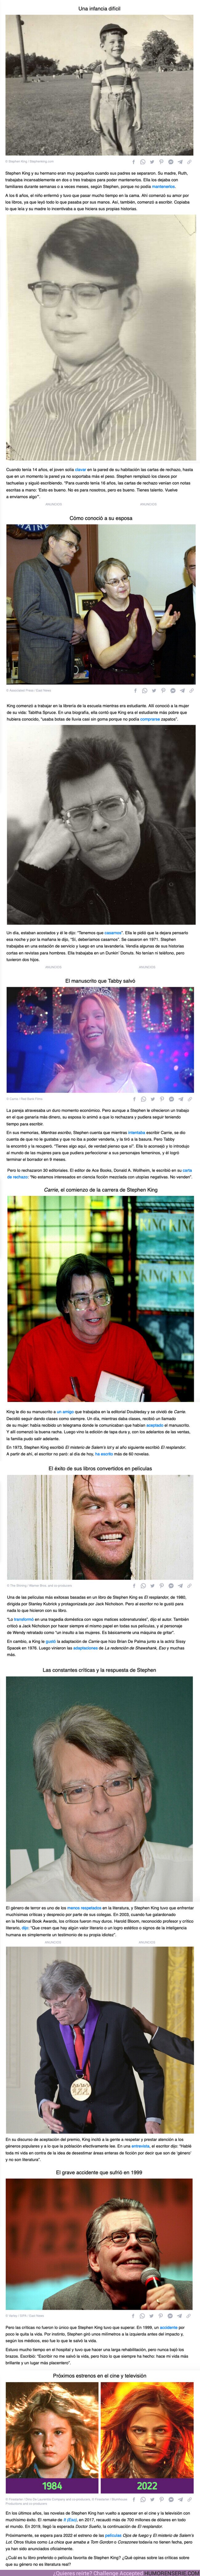 97099 - GALERÍA: La historia de Stephen King, que estuvo a punto de olvidarse de escribir después muchos rechazos